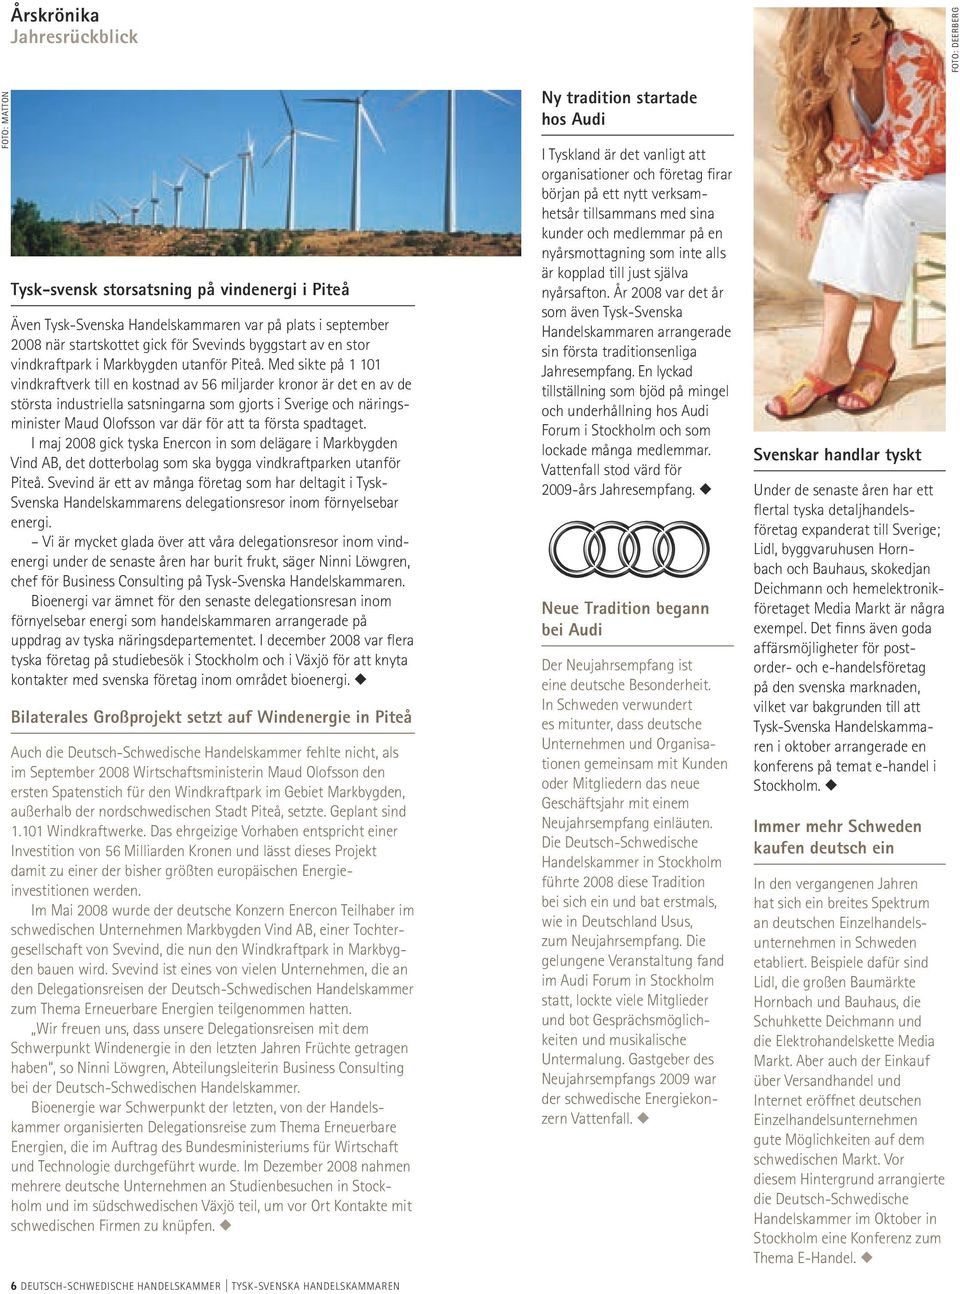 Med sikte på 1 101 vindkraftverk till en kostnad av 56 miljarder kronor är det en av de största industriella satsningarna som gjorts i Sverige och näringsminister Maud Olofsson var där för att ta